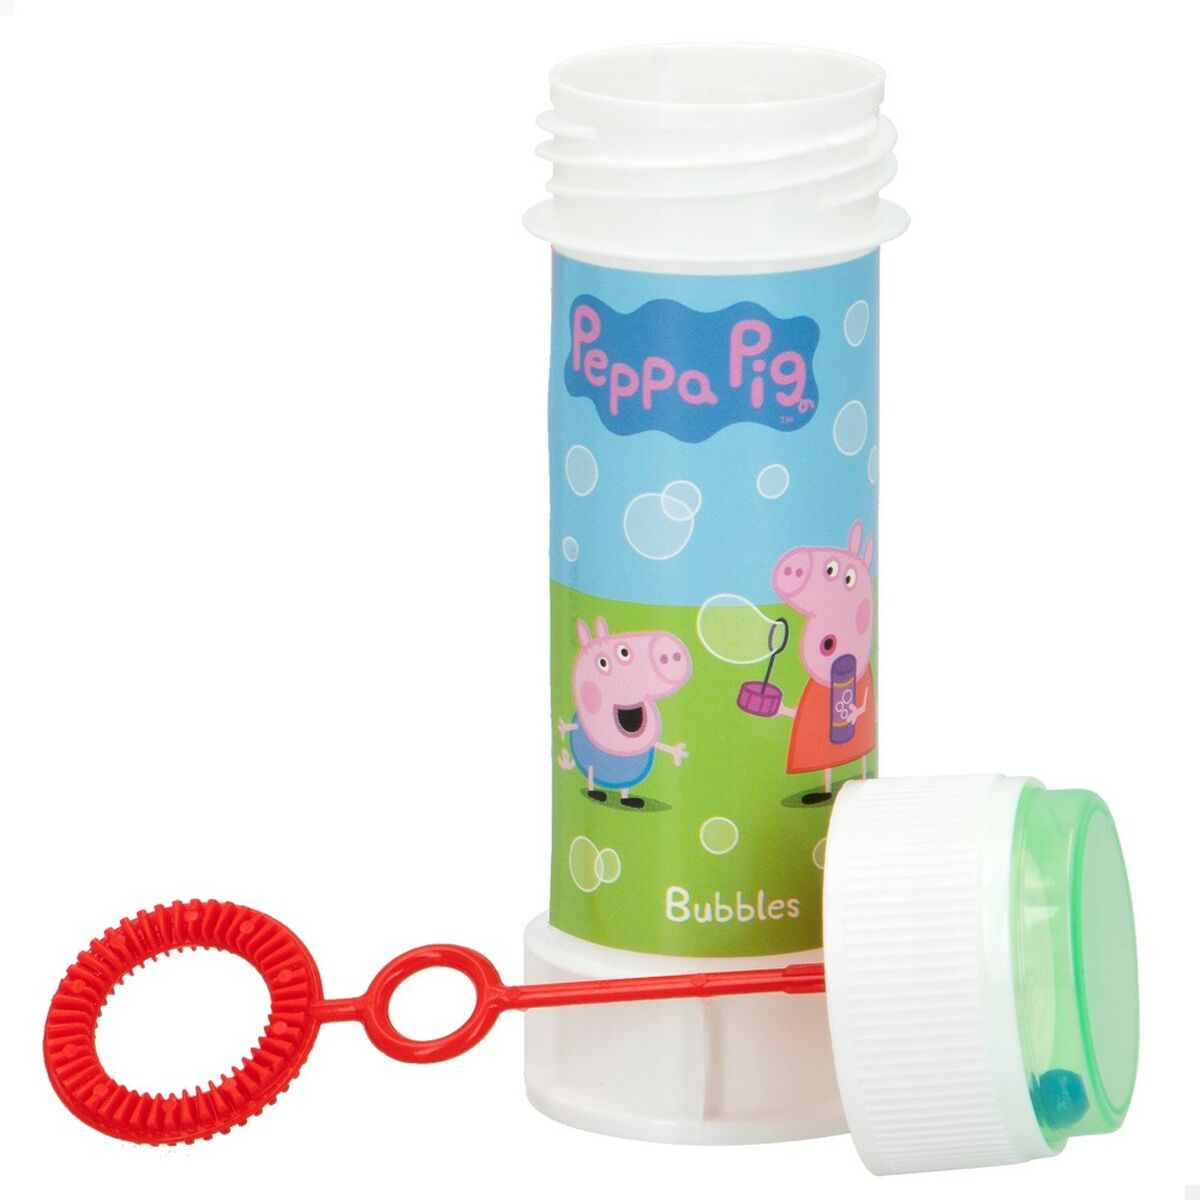 Pompe à bulle Peppa Pig 60 ml 3,7 x 11,5 x 3,7 cm (216 Unités)